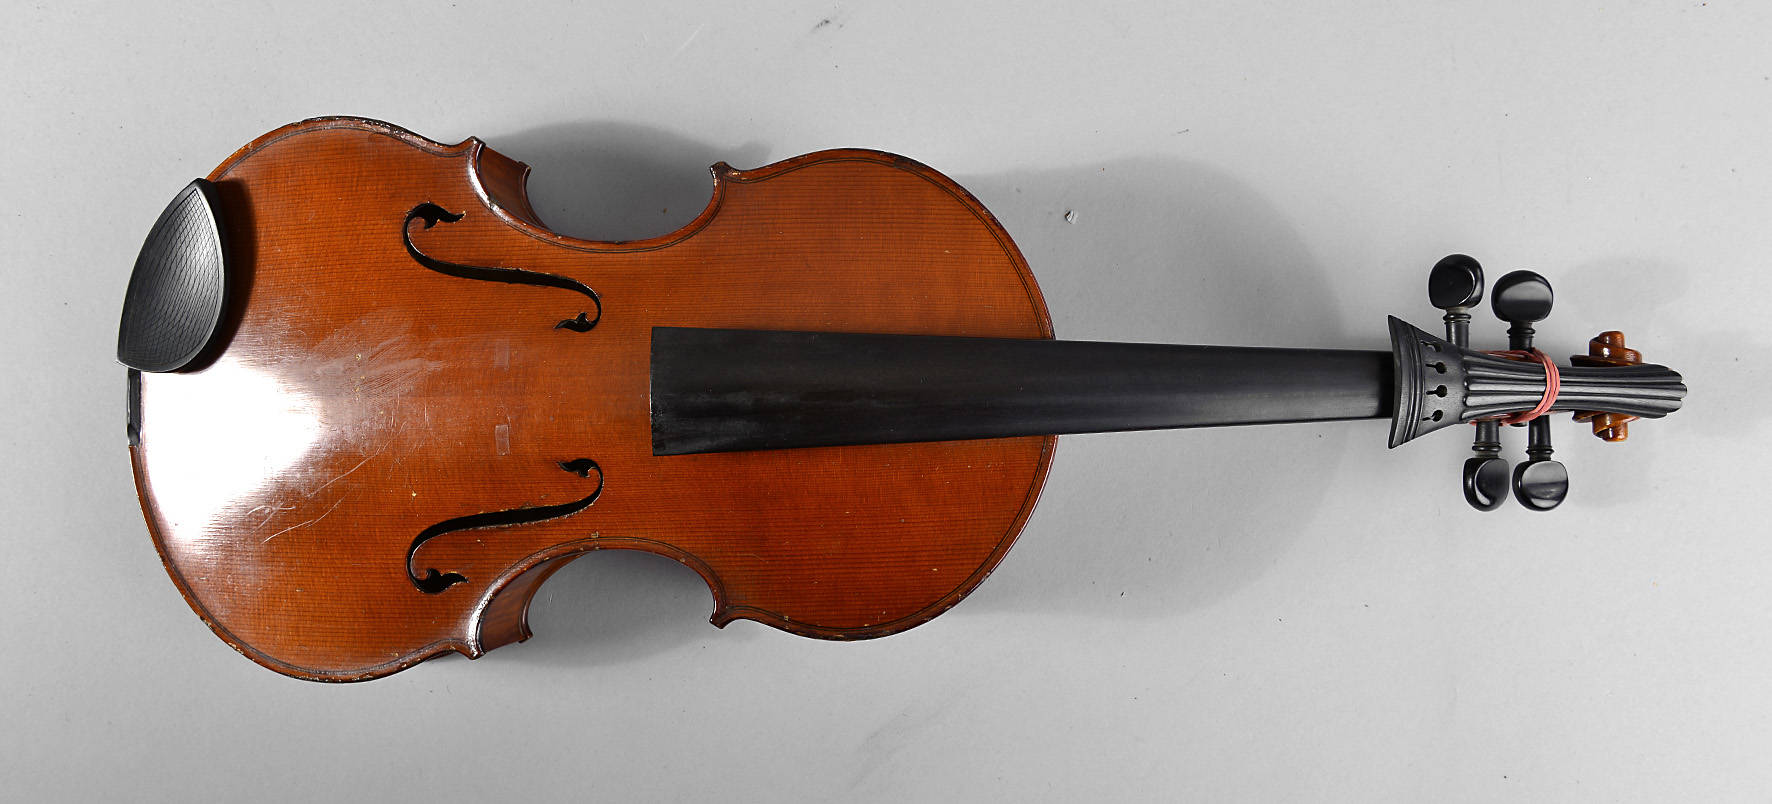 Außergewöhnliche Violine